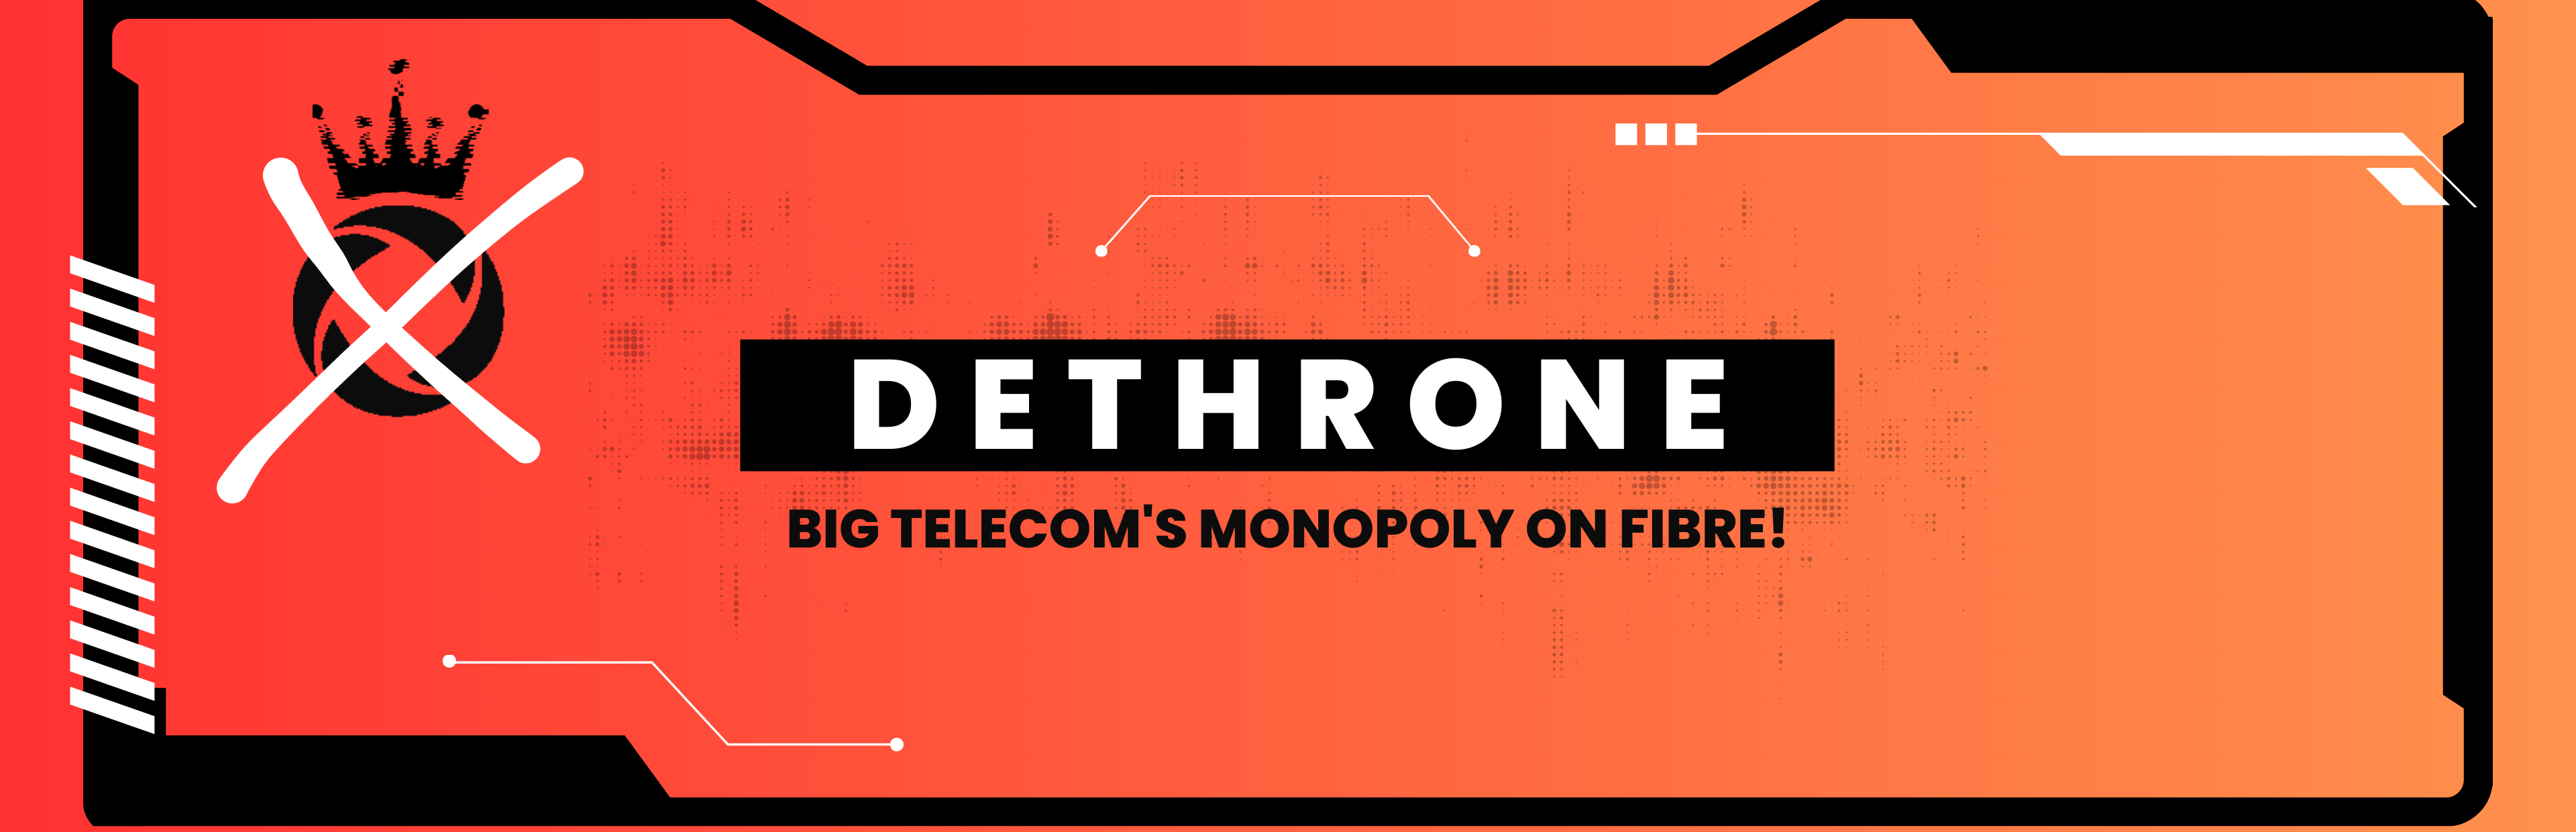 dethrone big telecom's monopoly on fibre